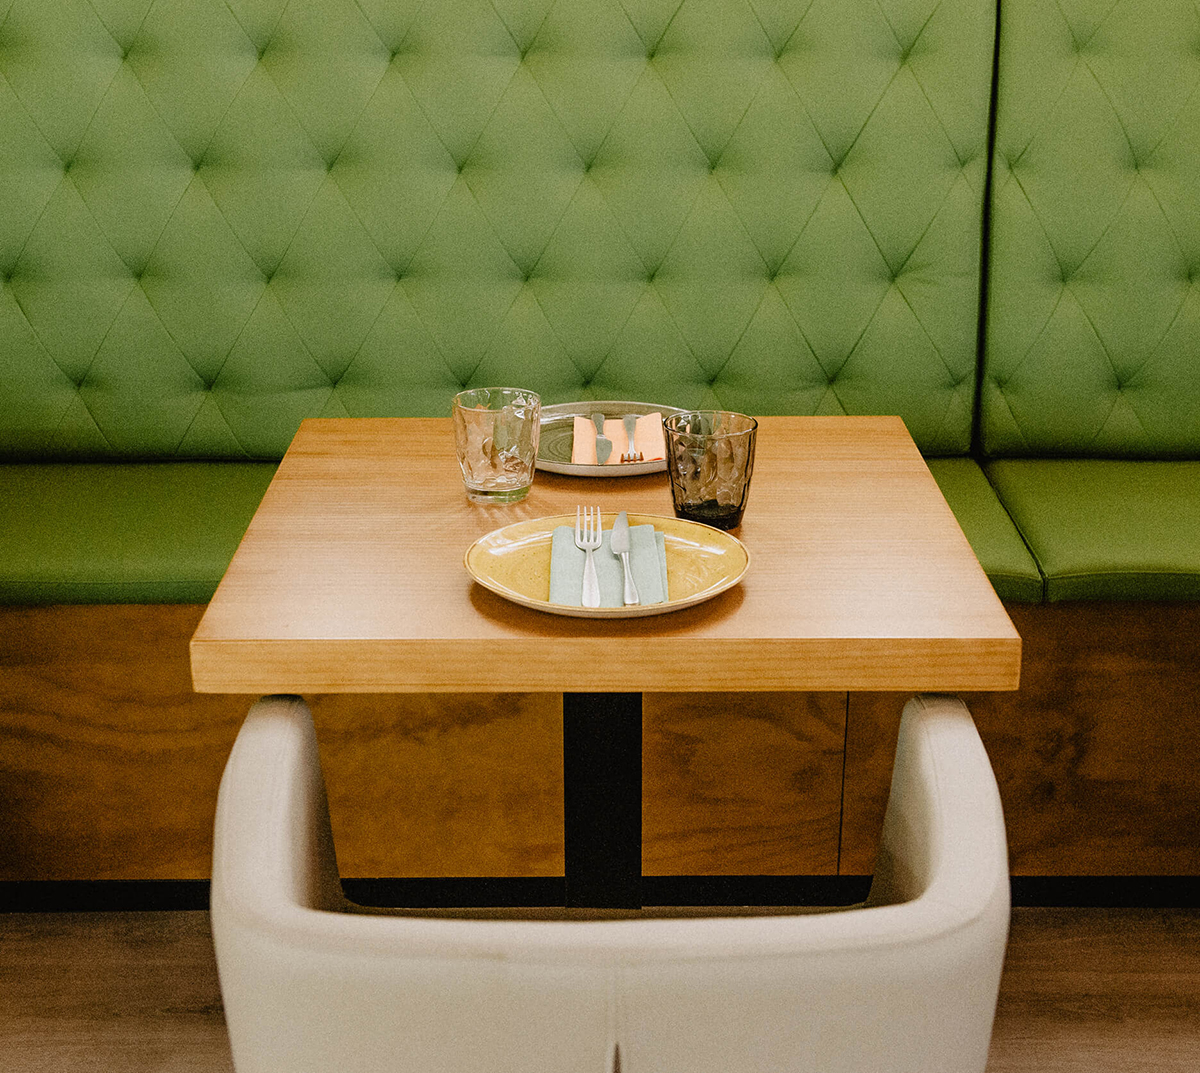 Diseño y desarrollo de identidad visual corporativa para restaurante Mondo. Fotografía detalle mesa interior restaurante.